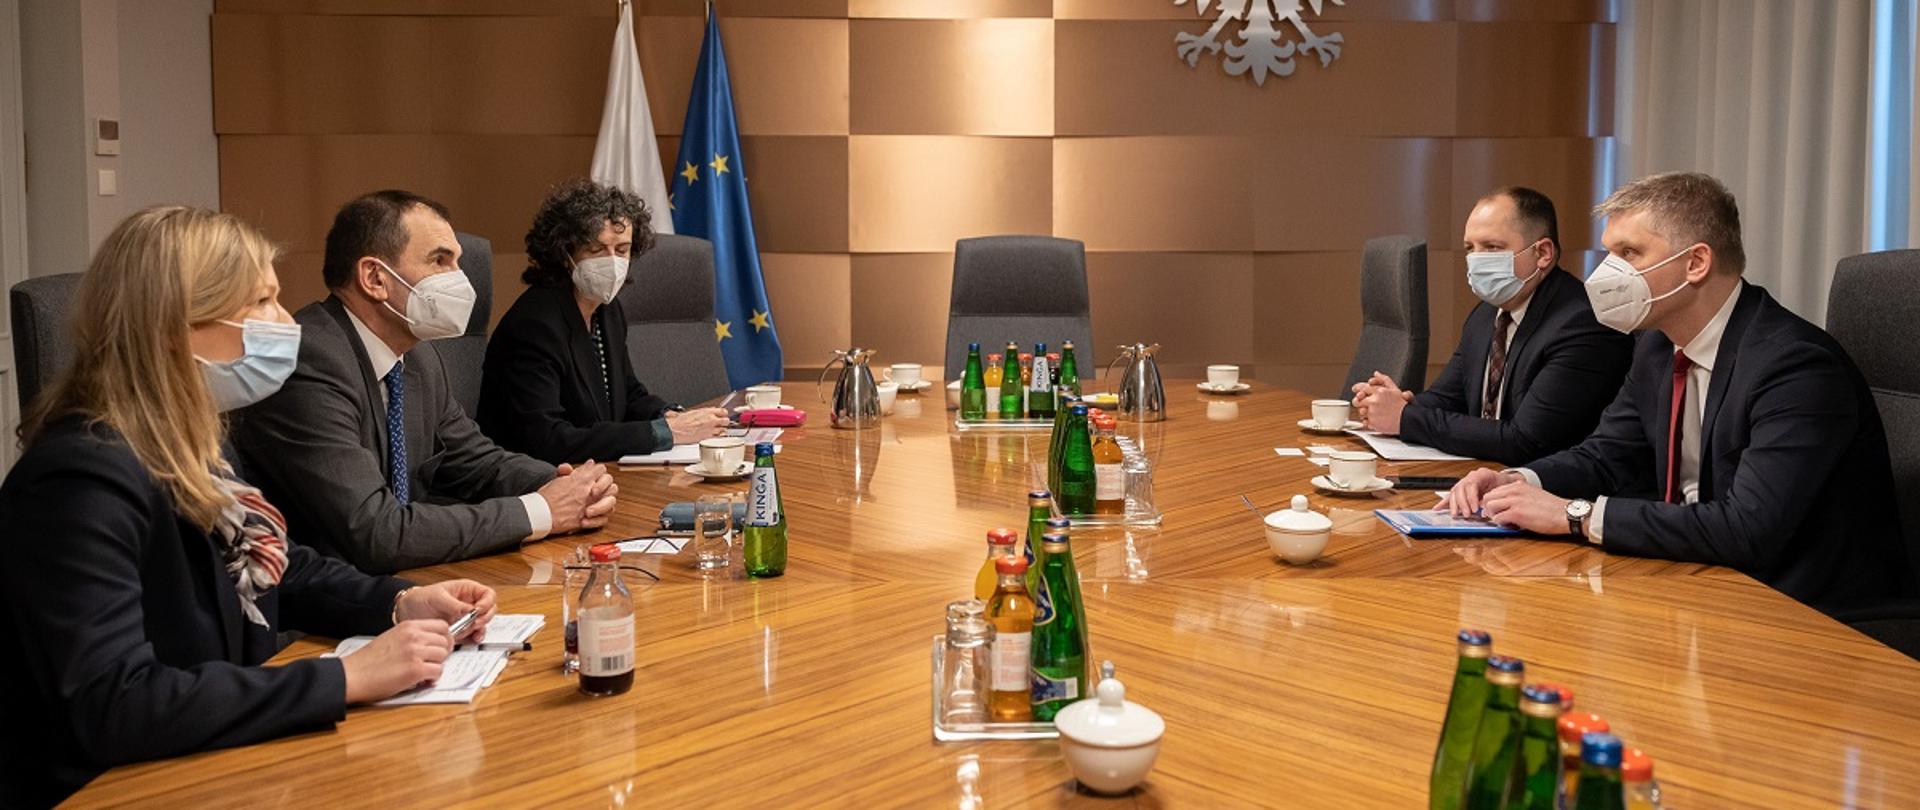 Minister rozwoju i technologii Piotr Nowak podczas rozmowy z wiceprezesem EBOR Alainem Pilloux, minister Nowak siedzi przy stole, na przeciwko, po jego lewej stronie siedzi prezes Pilloux